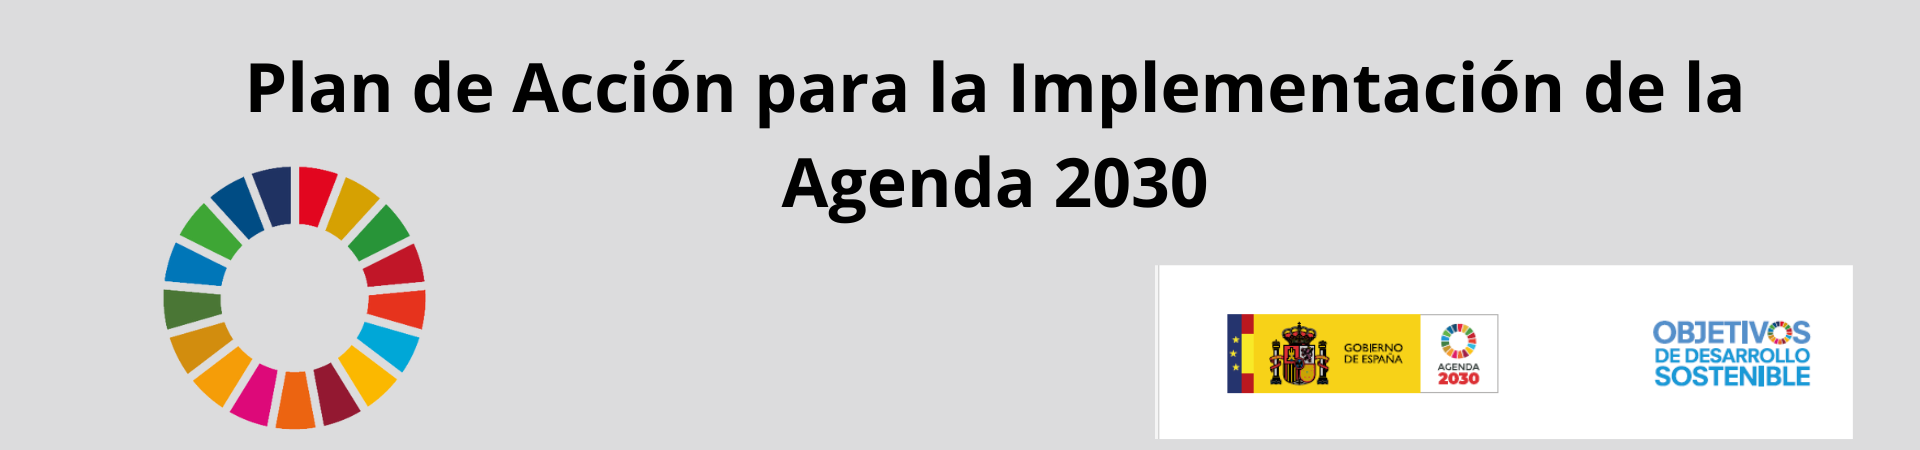 12. Plan de Accion implementacion Agenda 2030